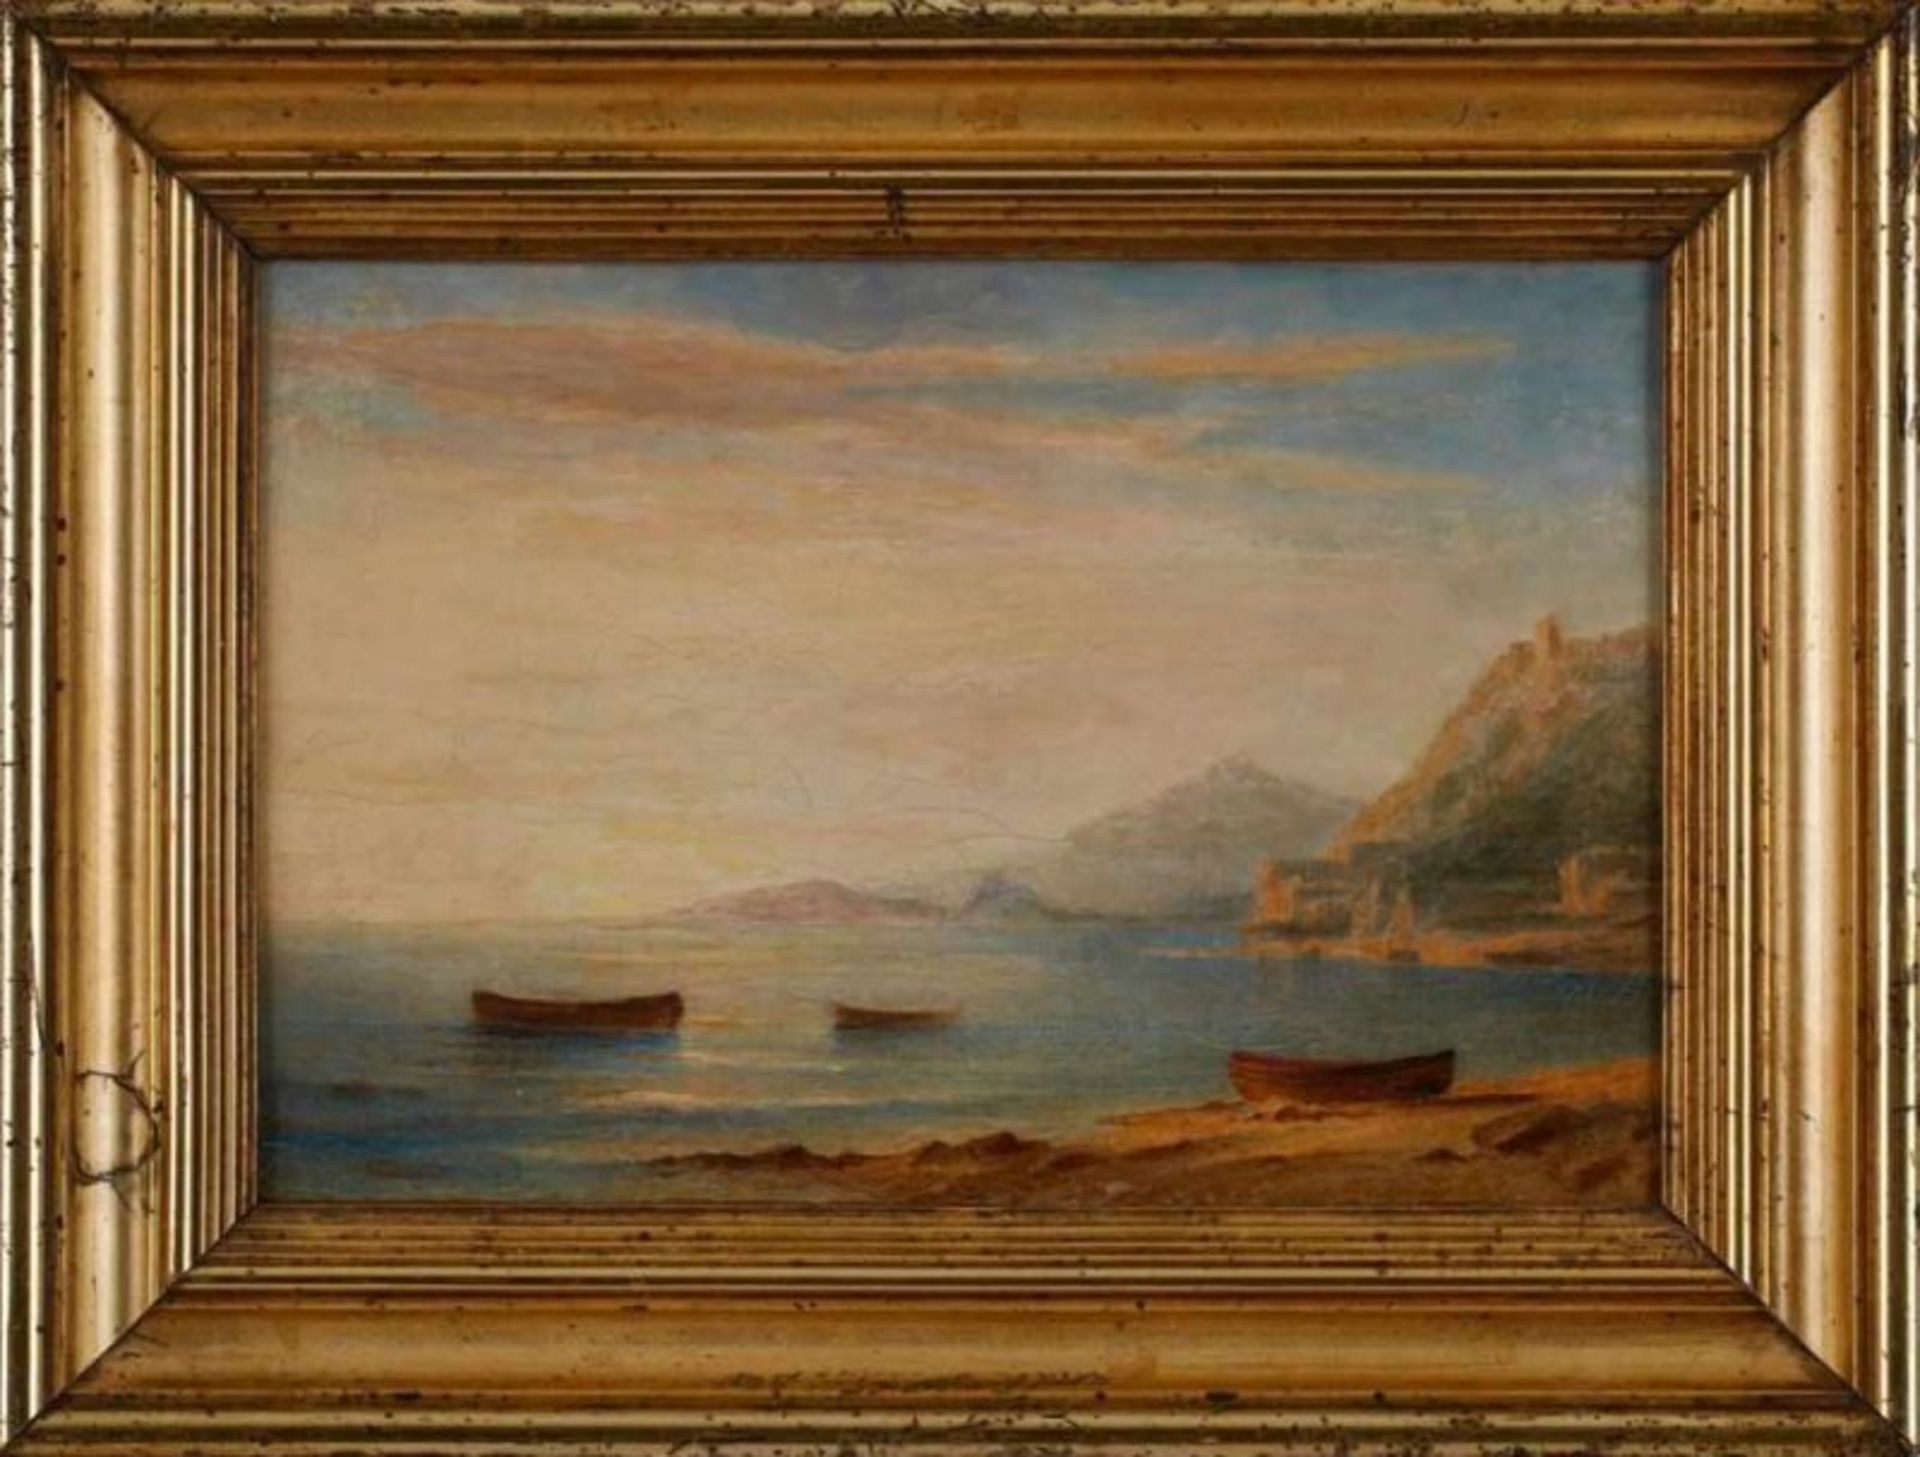 Gemälde/Ölstudie Carl Morgenstern 1811 Frannkfurt - 1893 Frankfurt "Italienische Küstenszene" - Bild 5 aus 6